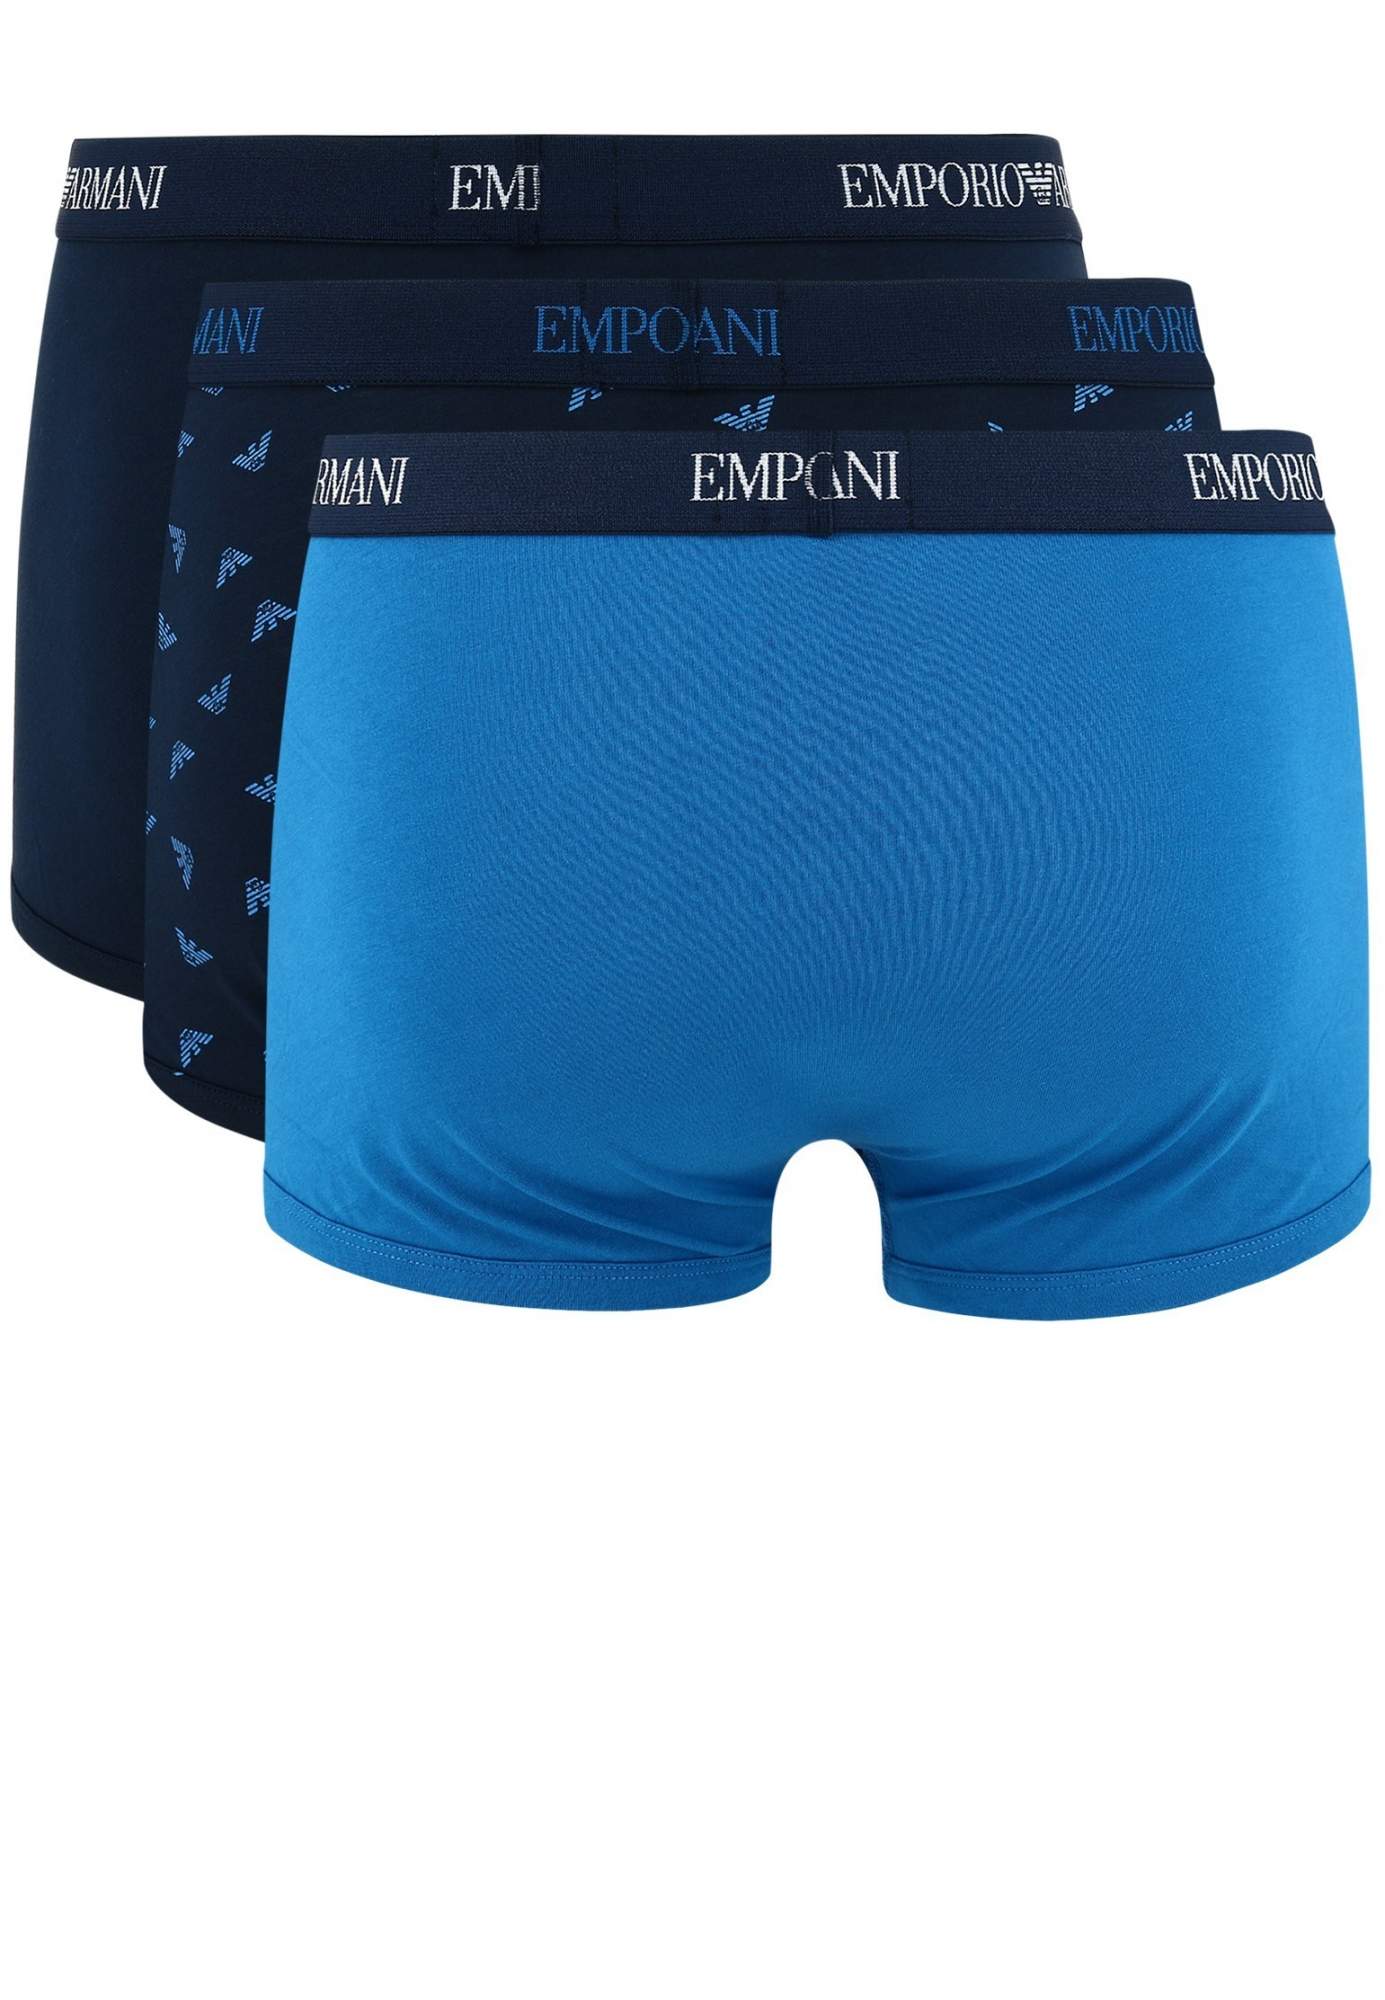 Комплект трусов мужских Emporio Armani 126749 синих L, купить в ...